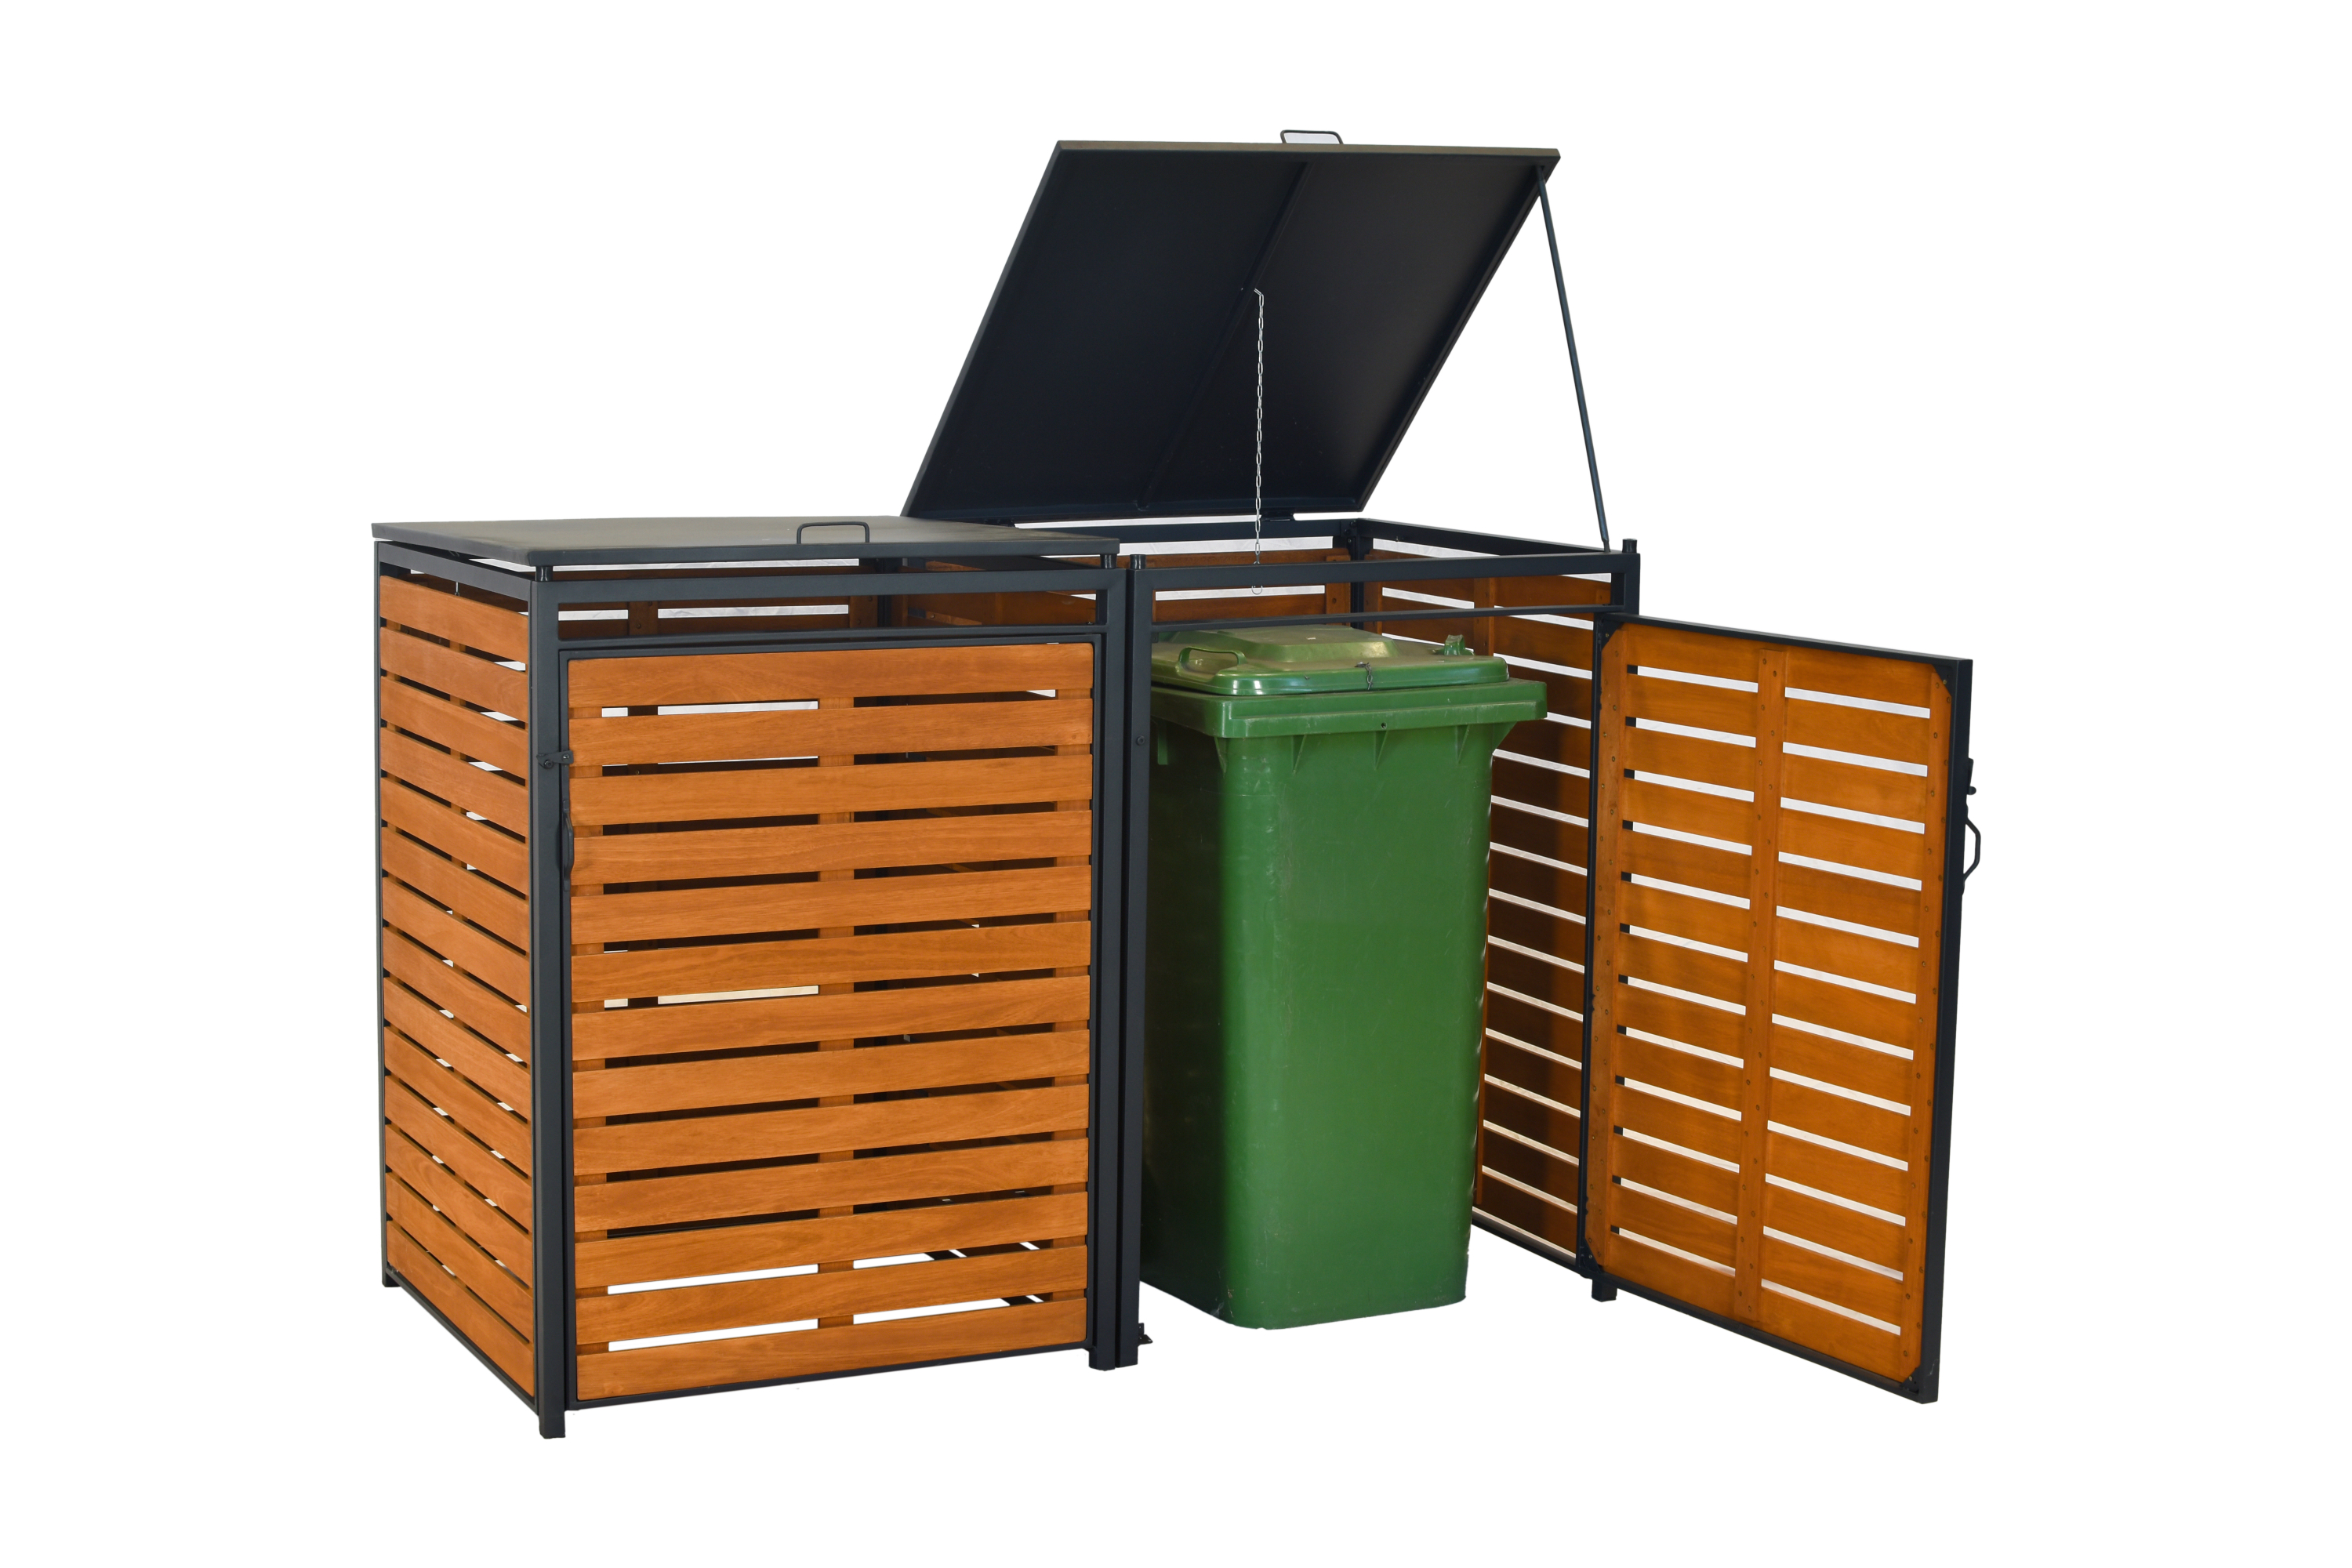 Mülltonnenbox 152x77x126cm für 2x Tonnen groß 240 Liter, Alu graphit + Akazie geölt